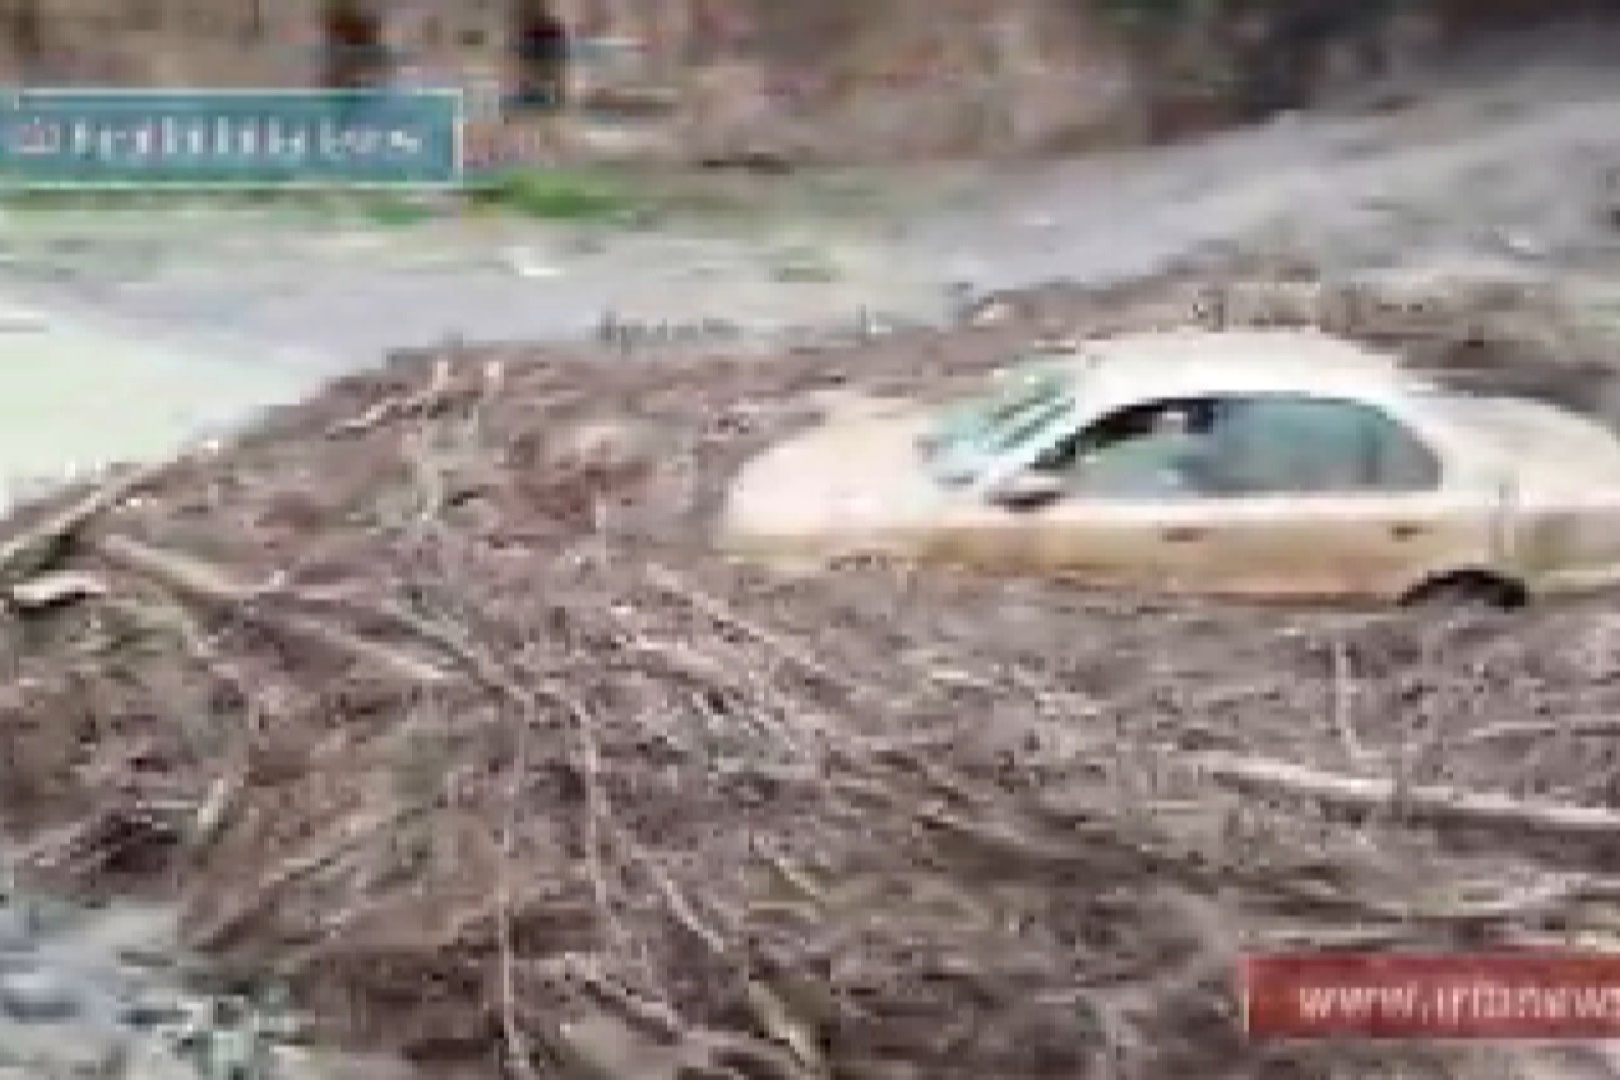 فیلم | لحظه شروع سیل در مشهد و گیرافتادن دو خودرو با سرنشین